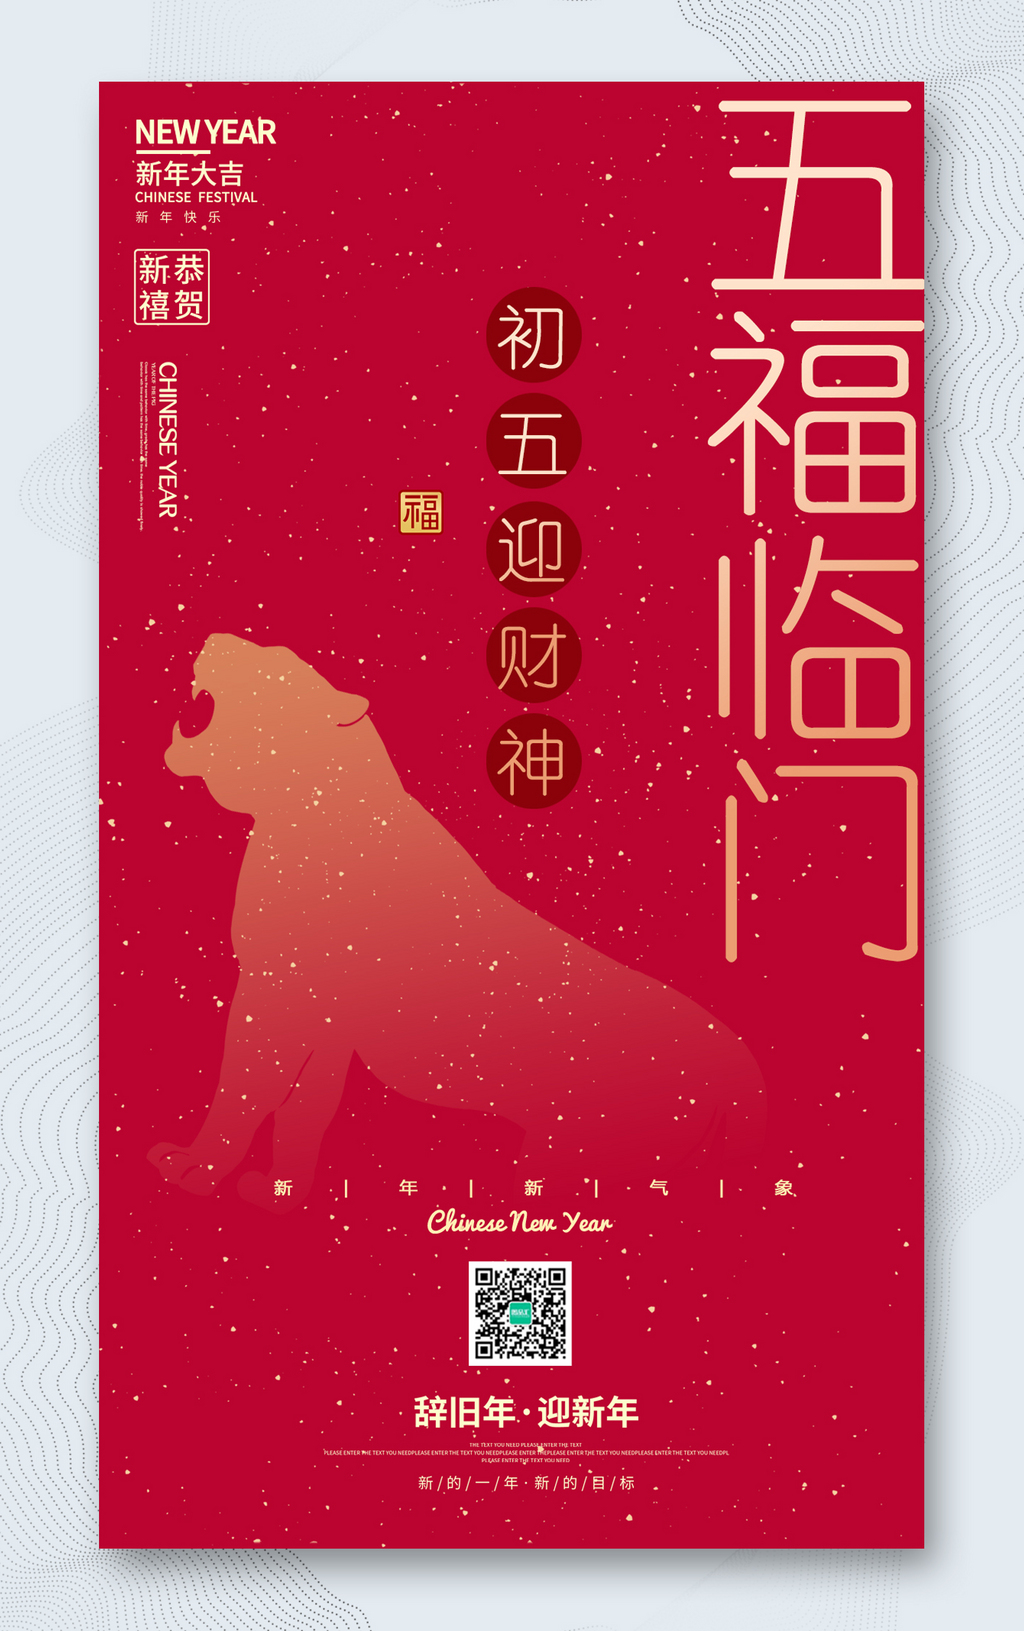  春节正月初五迎财神海报